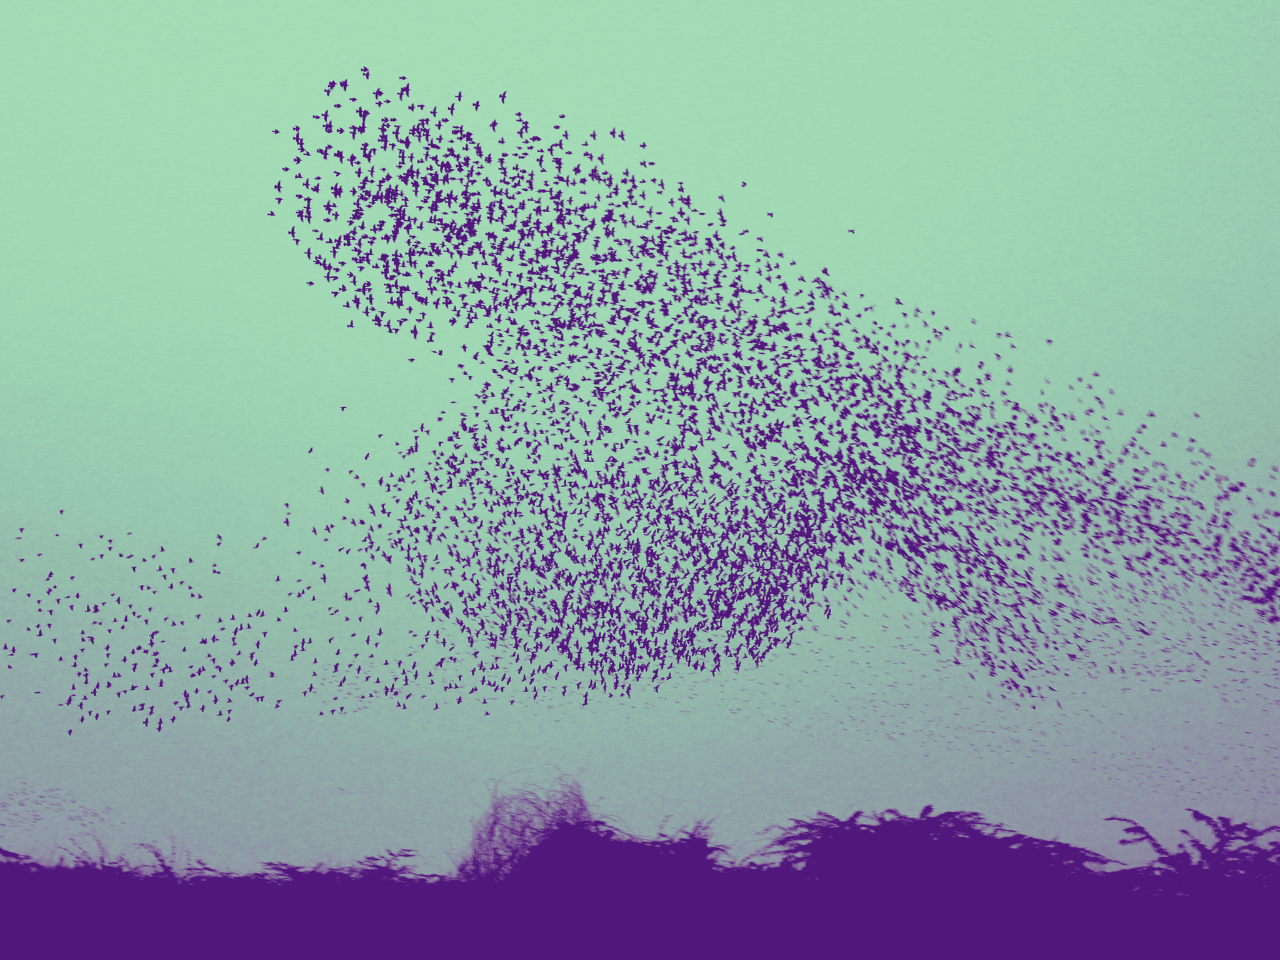 Vogelschwarm - Sinnbild für moderne Führung